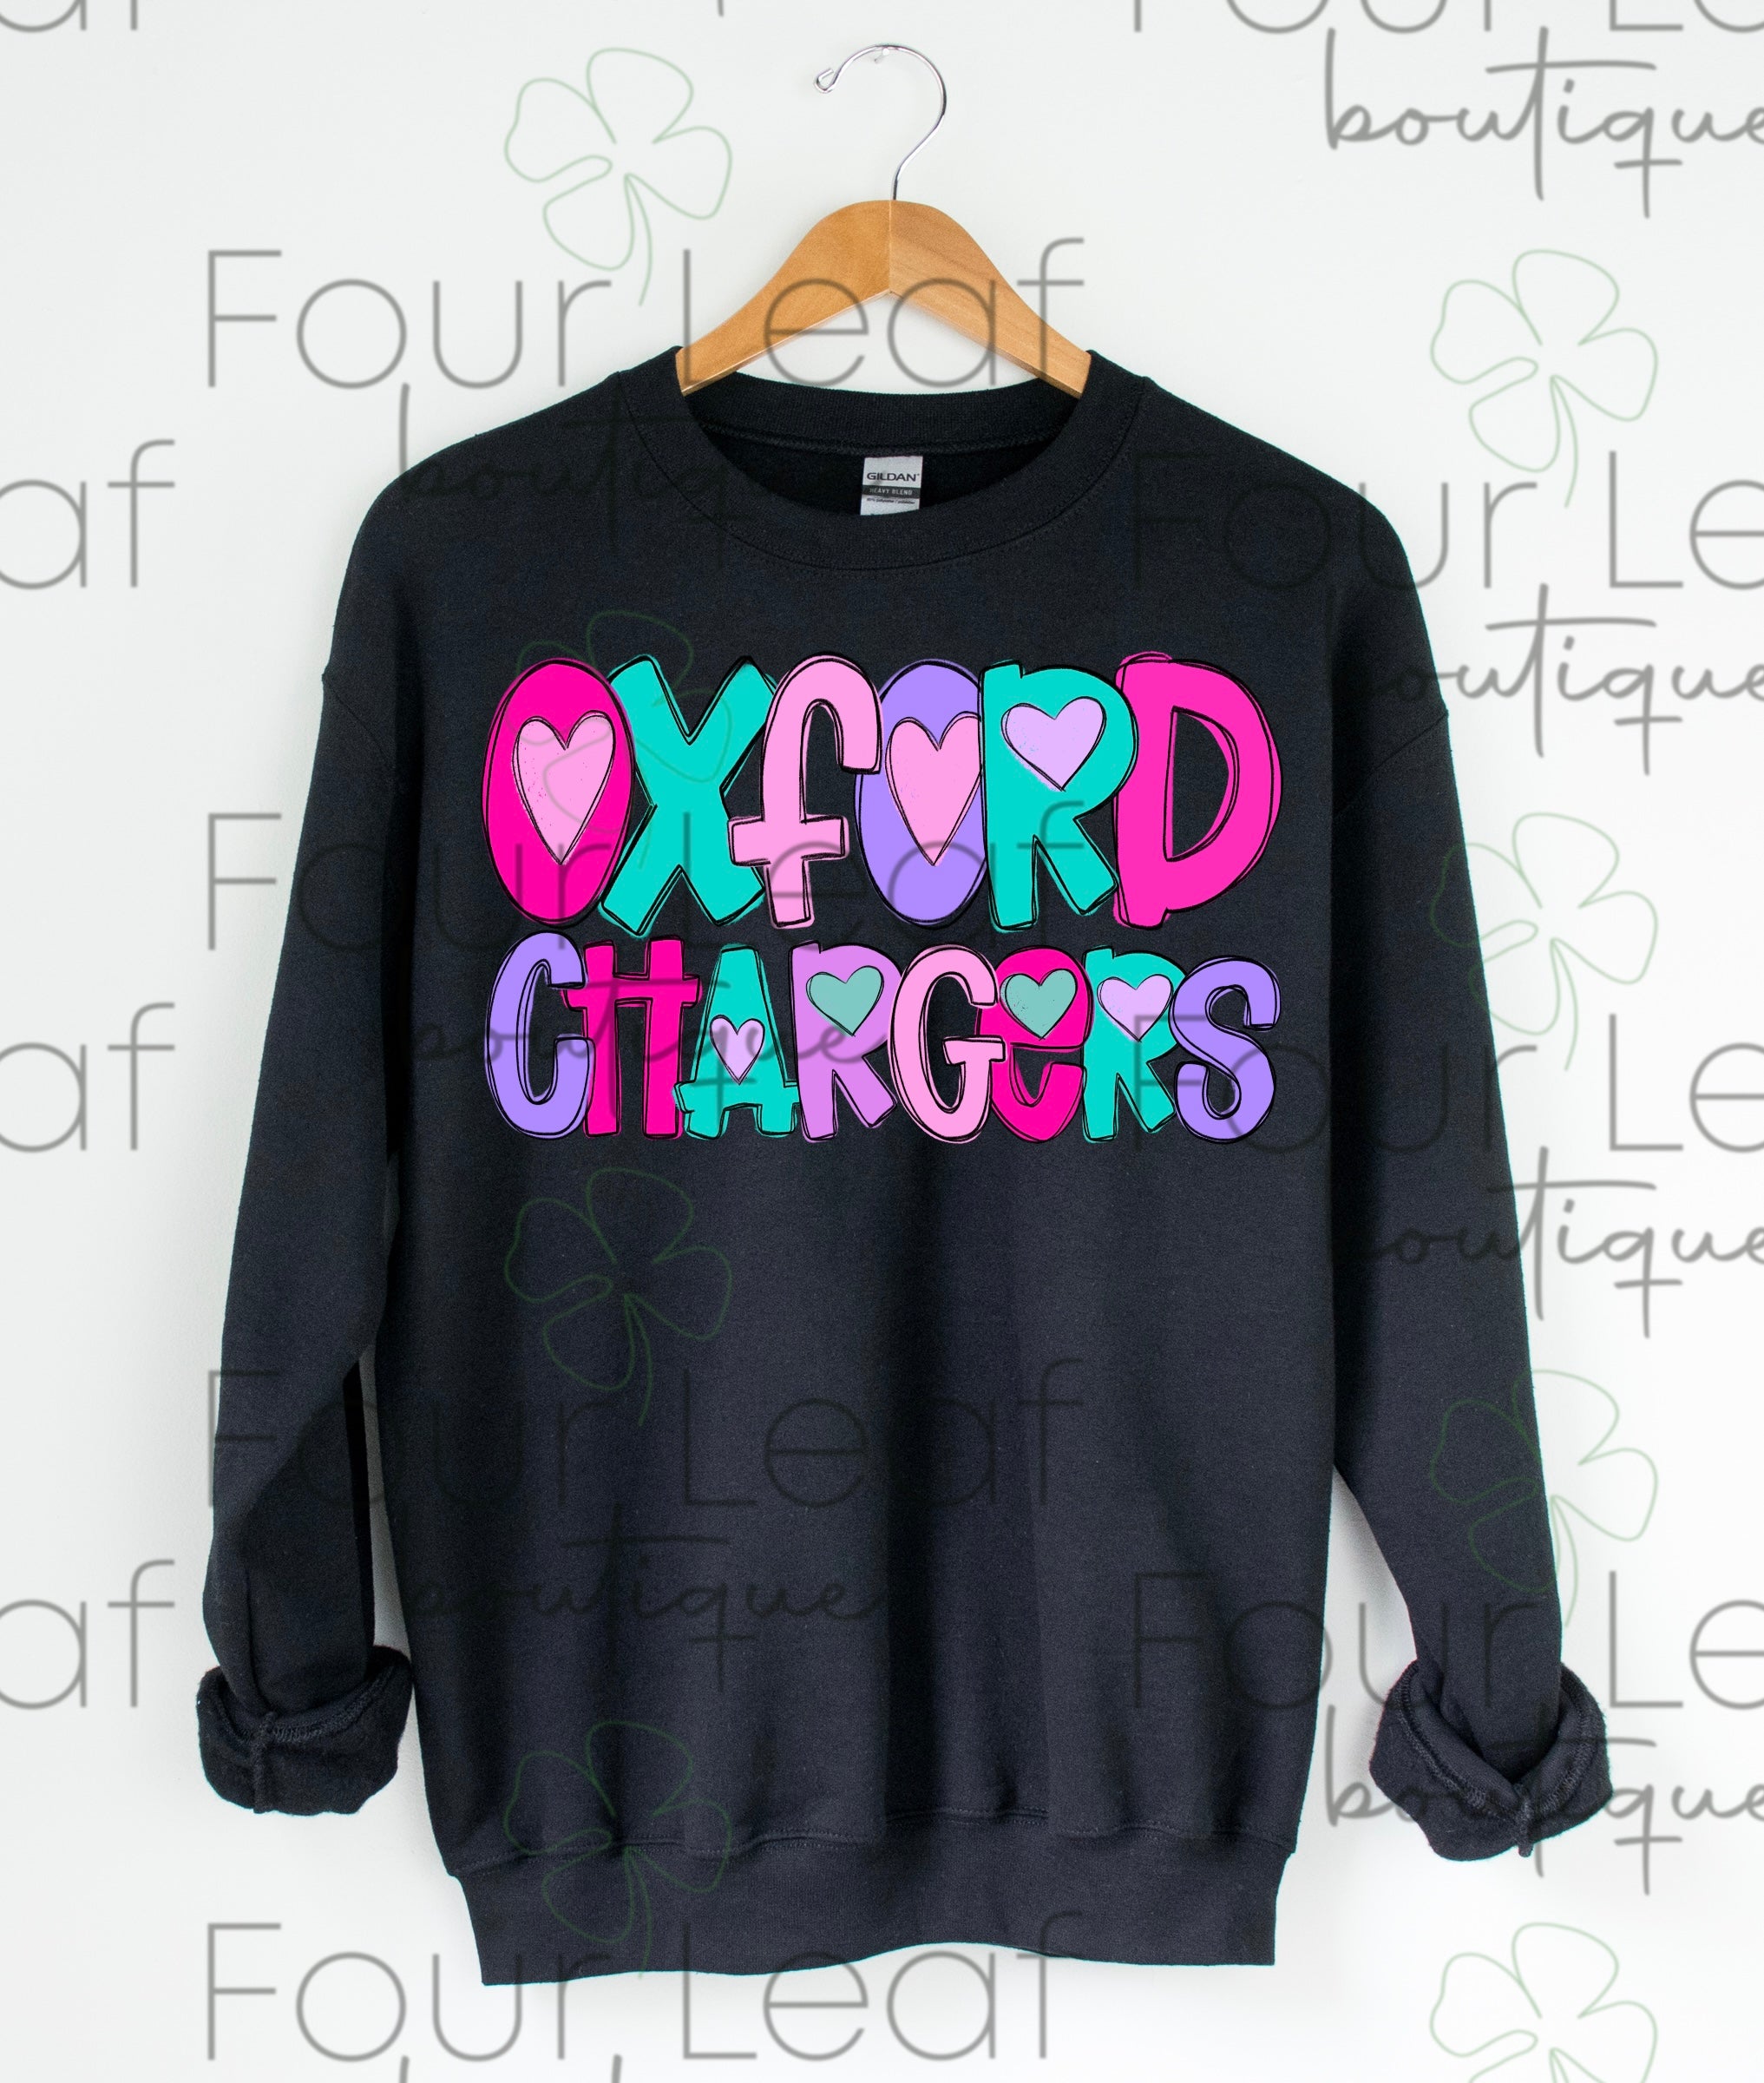 Oxford Chargers sweatshirt